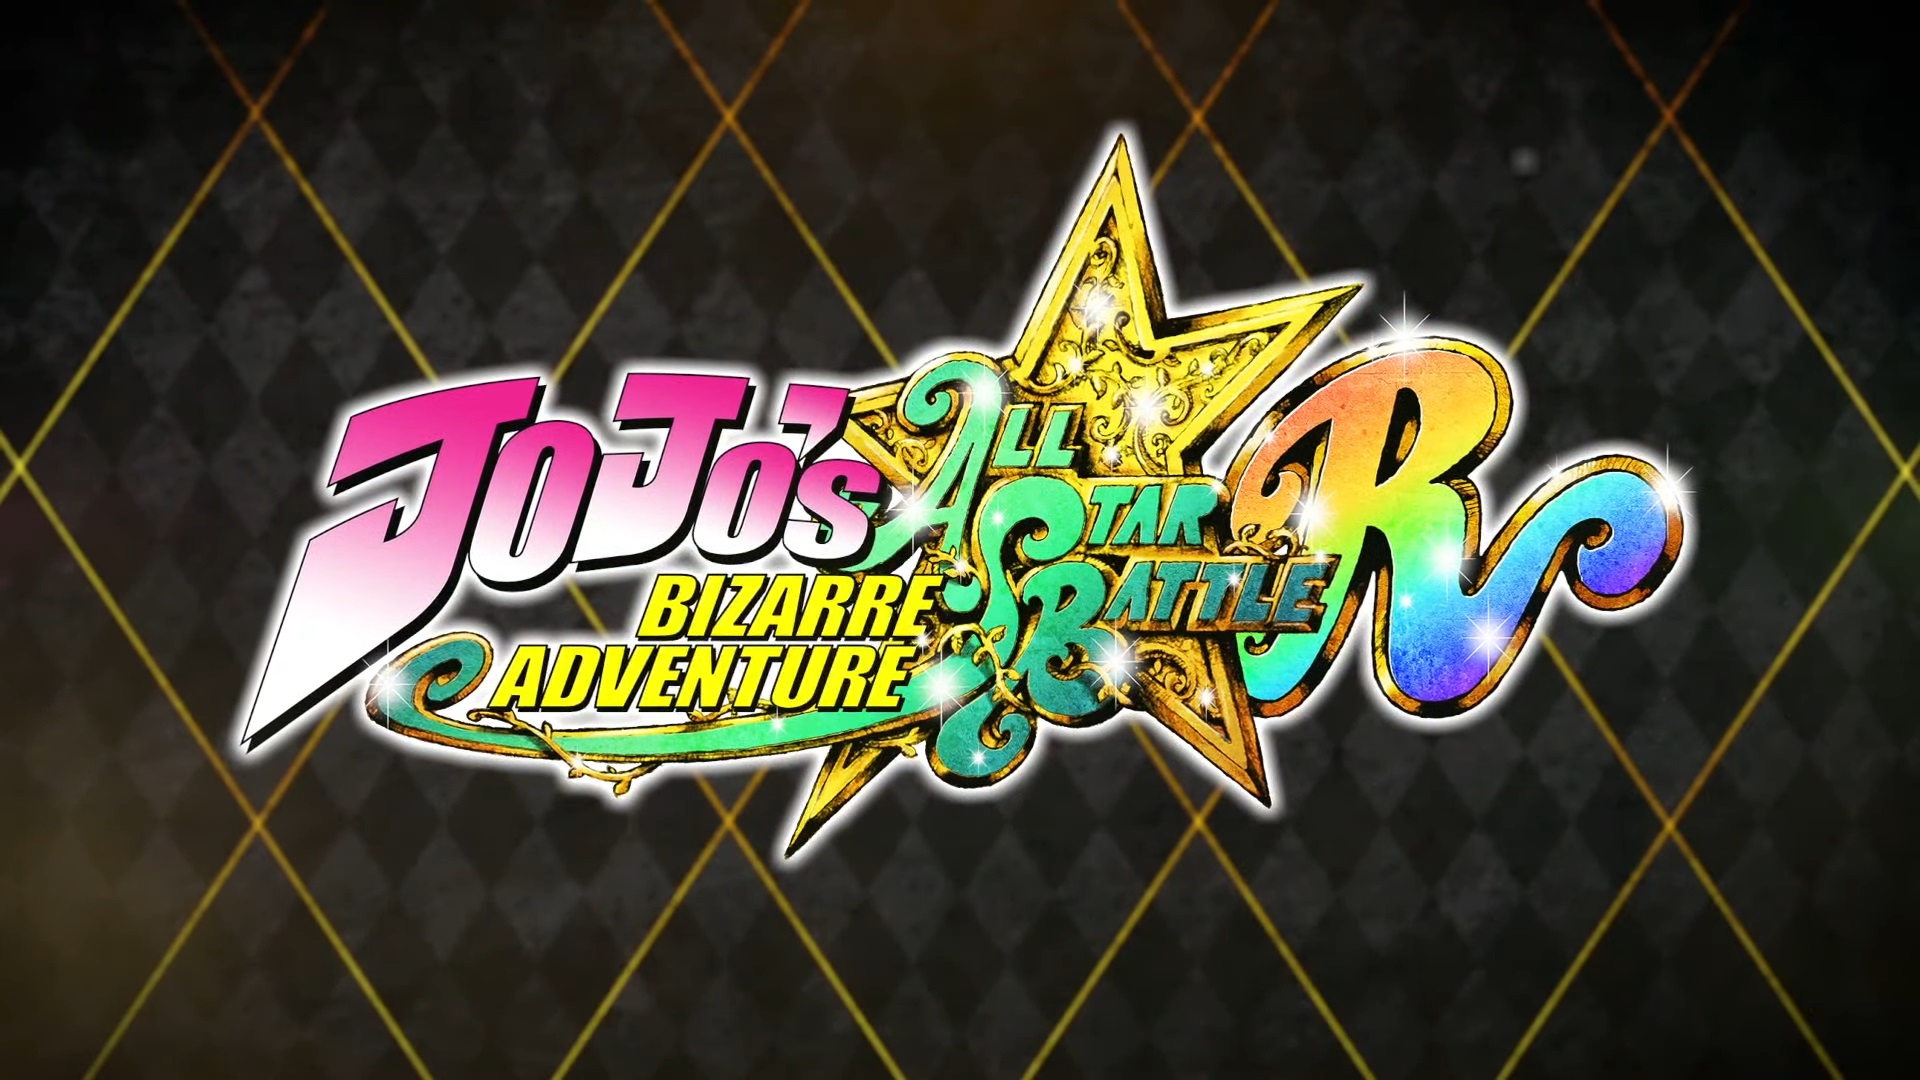 Jojo's Bizarre Adventure: All Star Battle R announced for PS5 & PS4